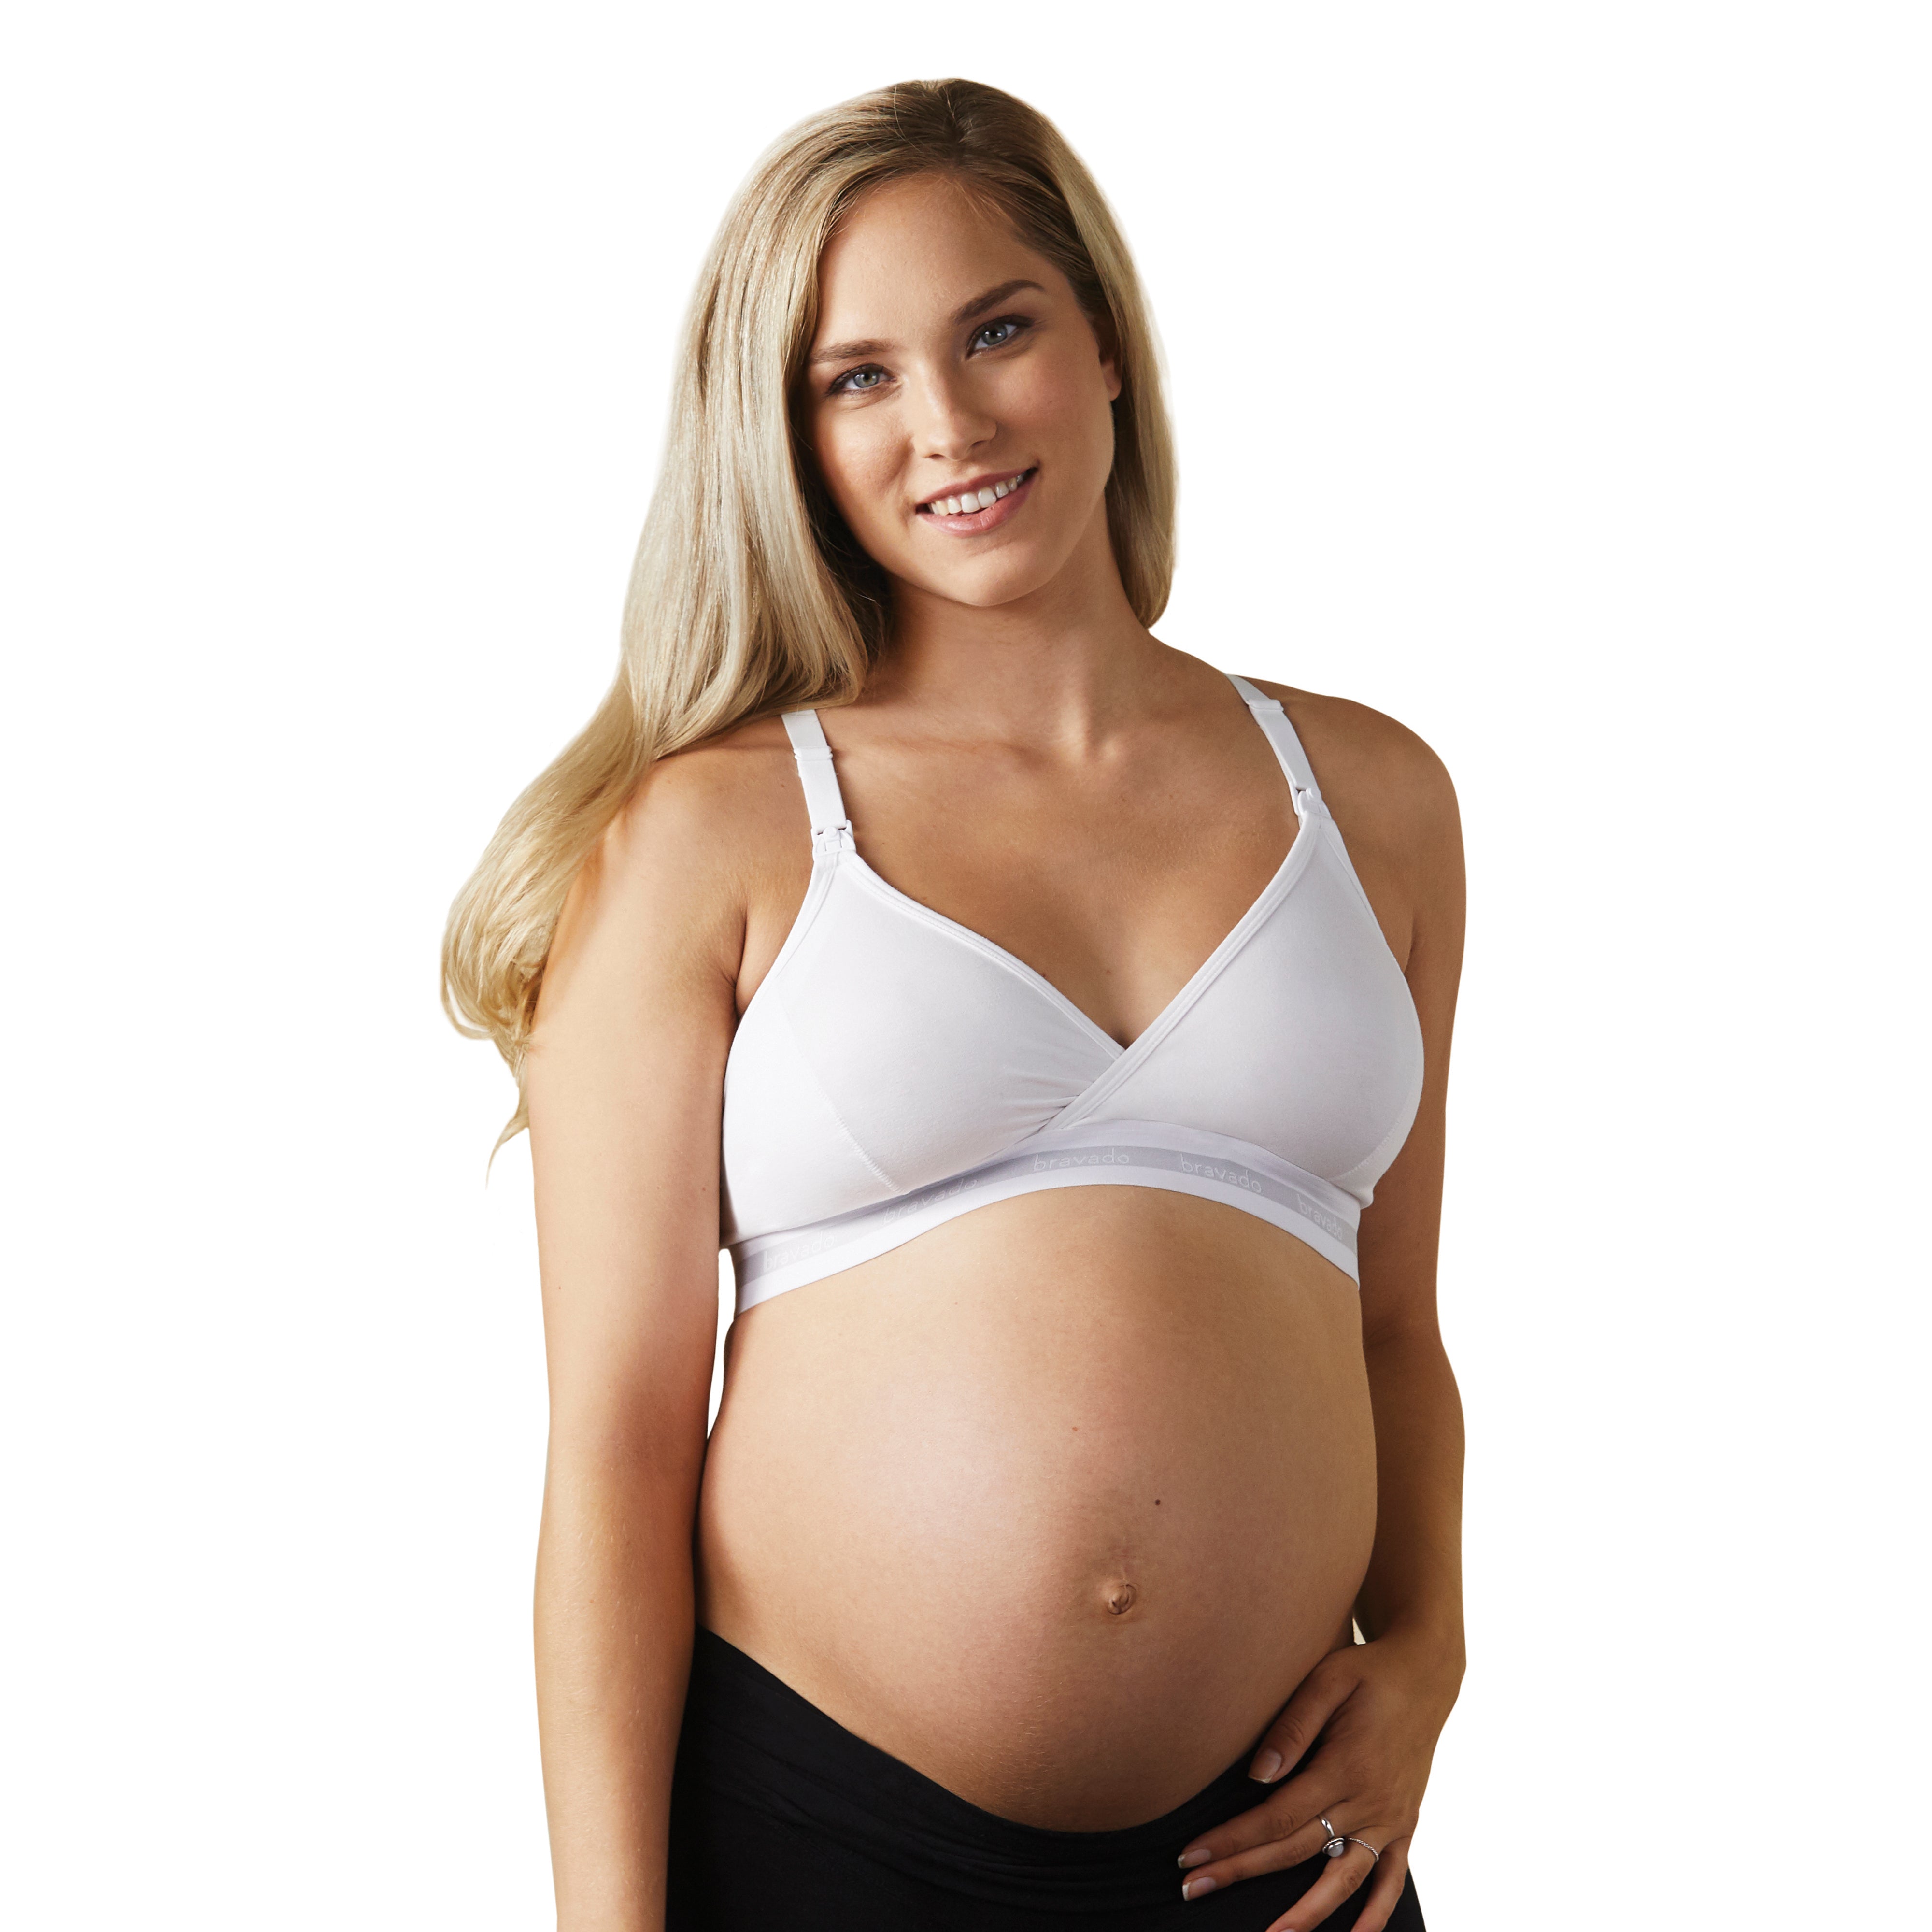 Medela Comfy Maternity-Nursing Bra - White (3 Sizes)